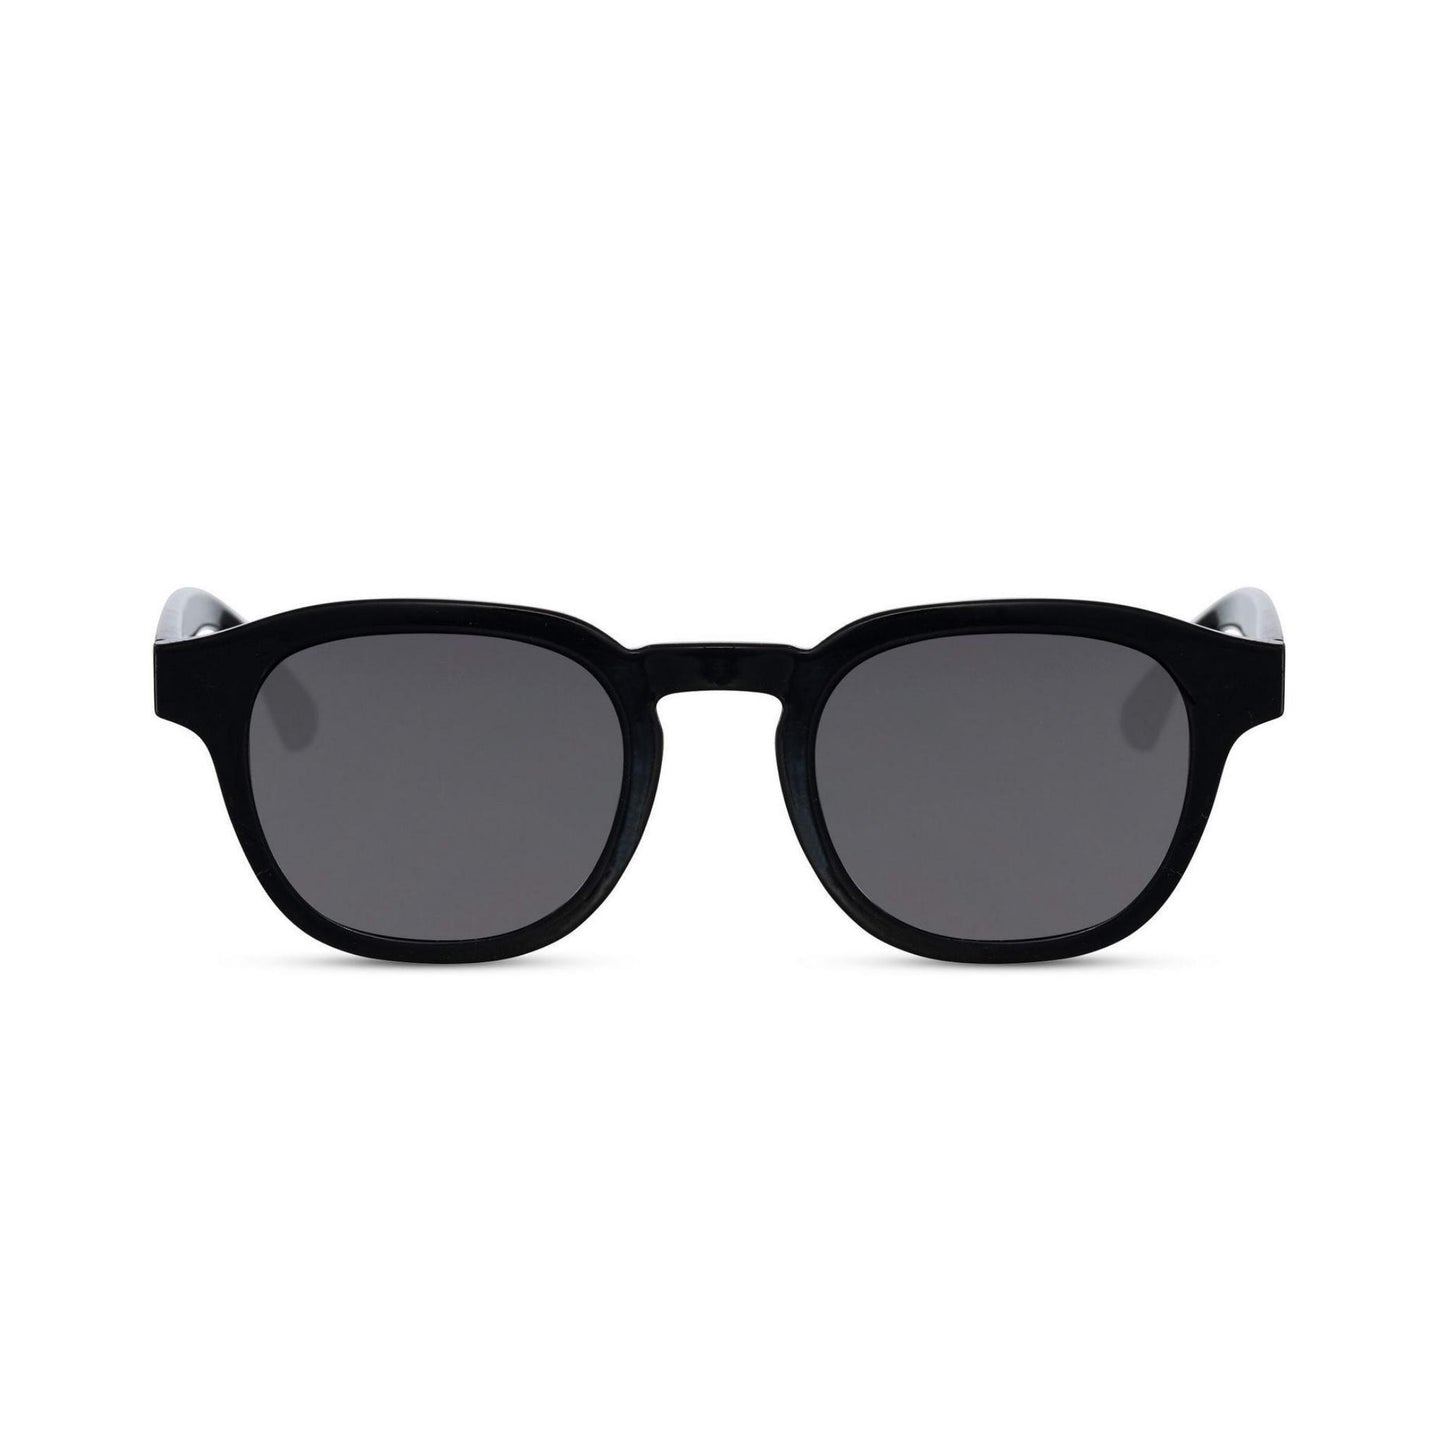 Γυαλιά ηλίου Montreal της Exposure Sunglasses με προστασία UV400 με μαύρο σκελετό και μαύρο φακό.